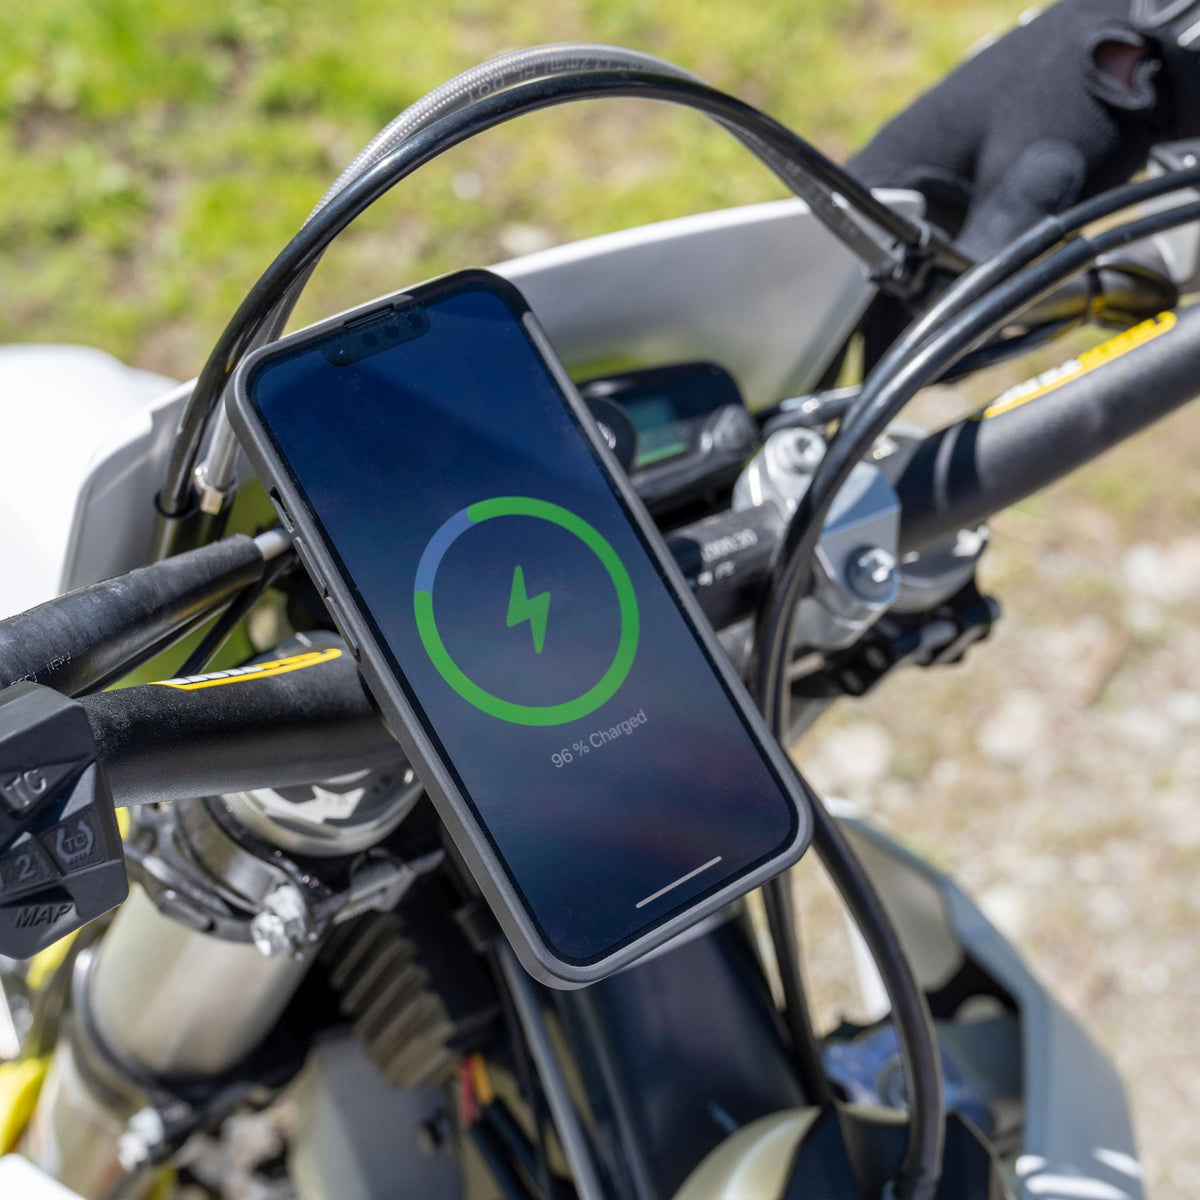 Amortisseur antivibration pour support téléphone - Équipement moto